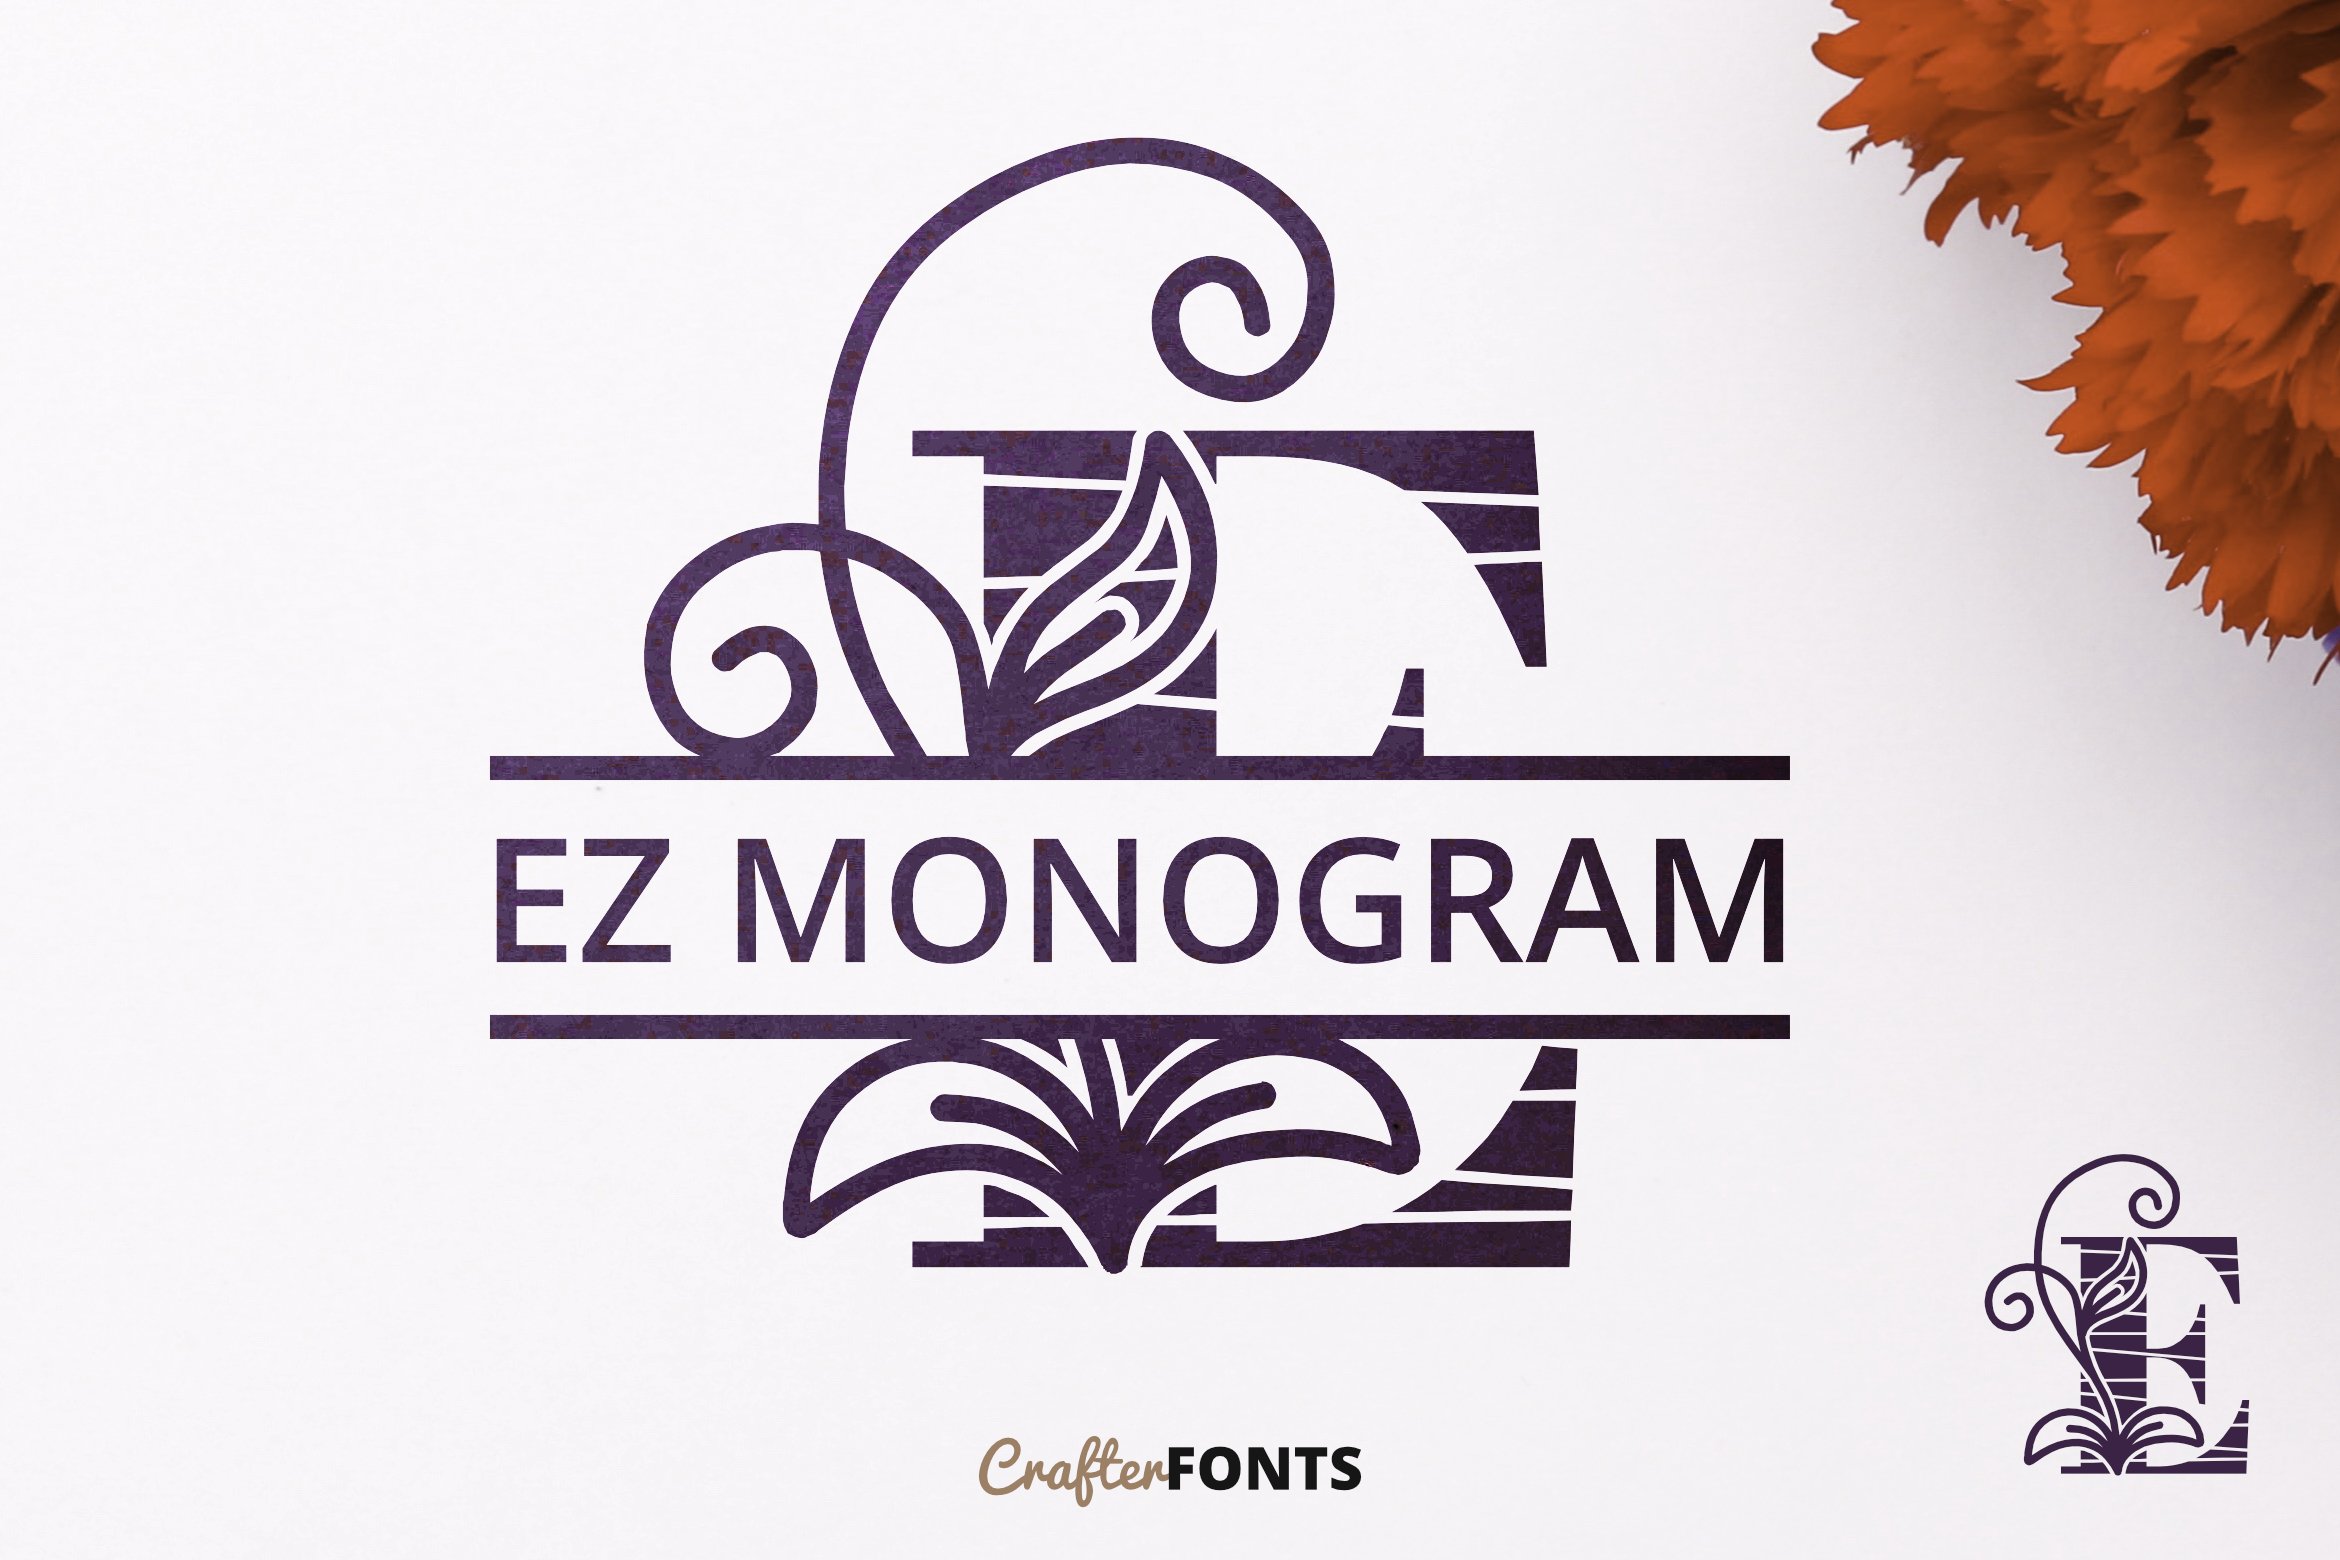 EZ Monogram cover image.